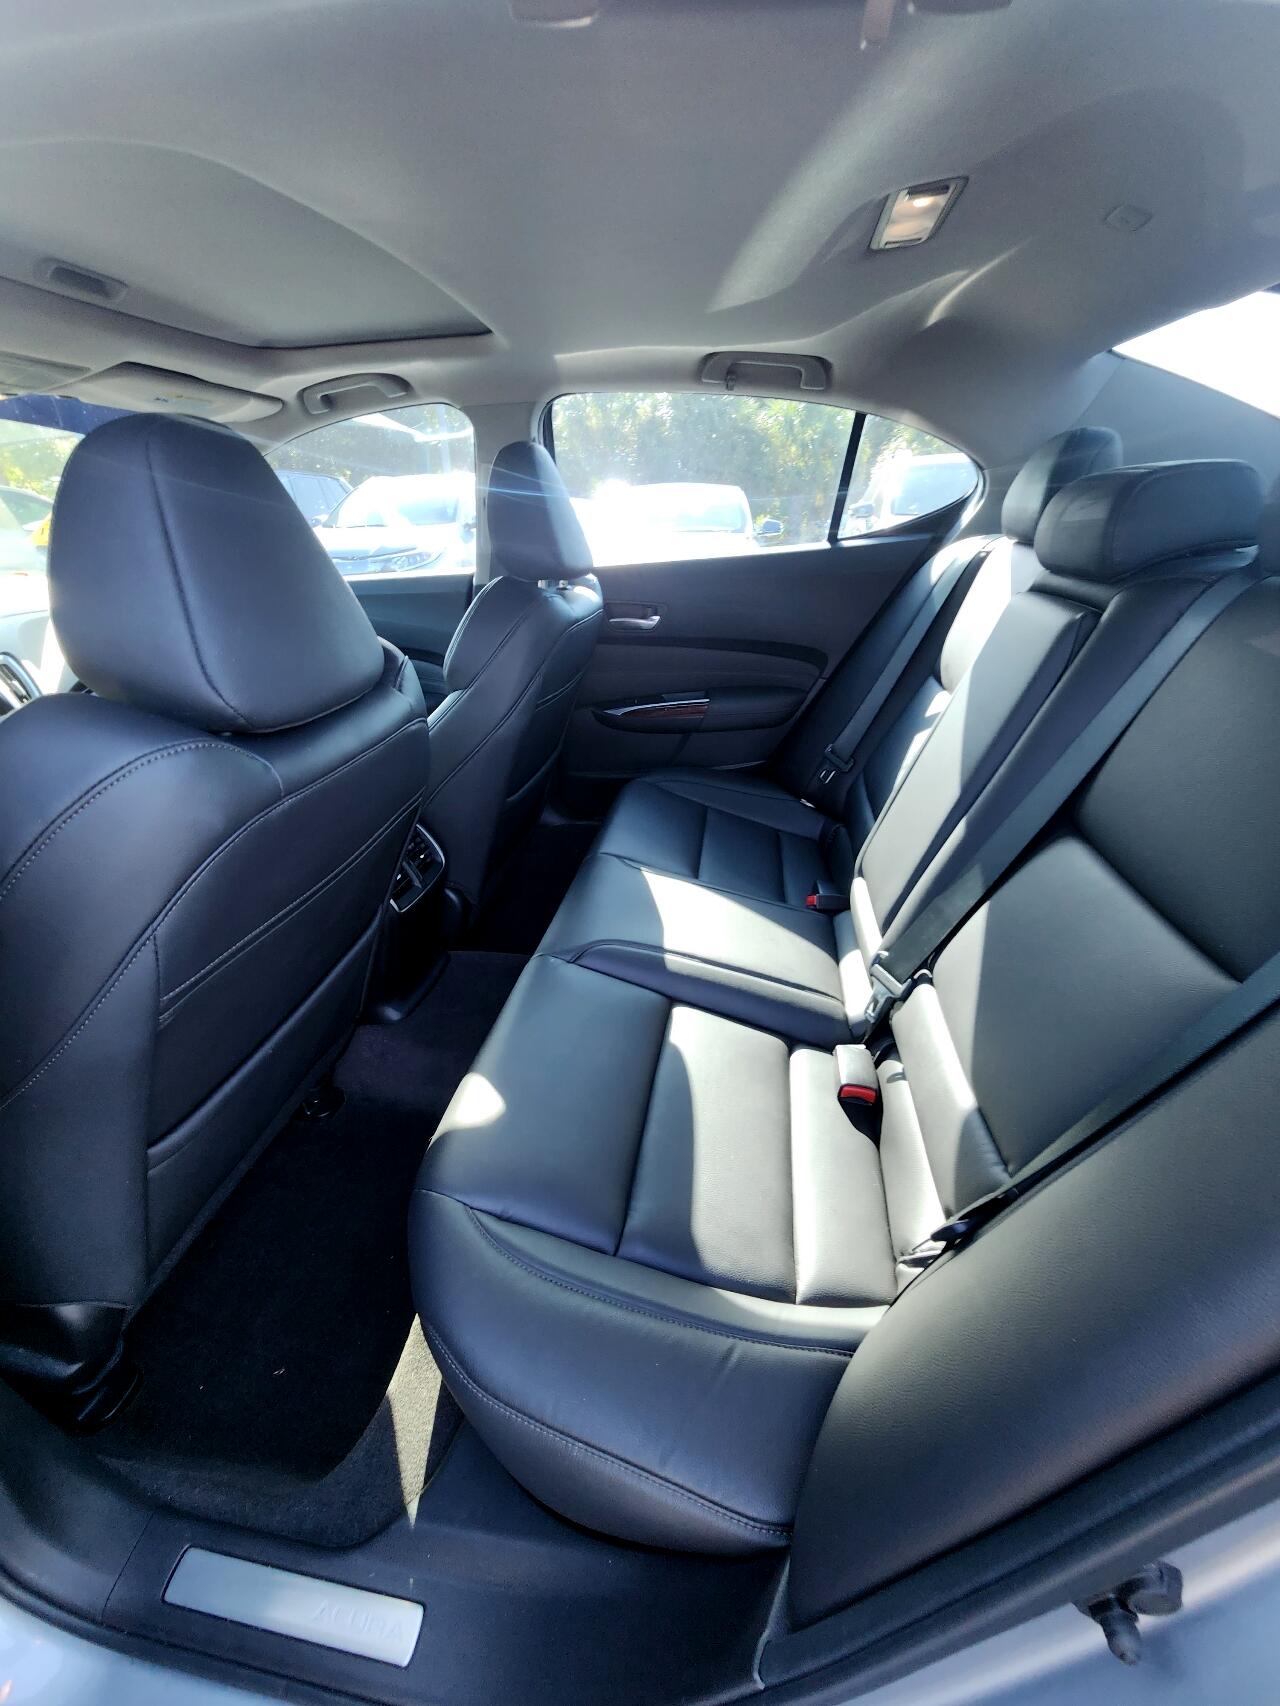 2015 ACURA TLX Sedan - $18,999